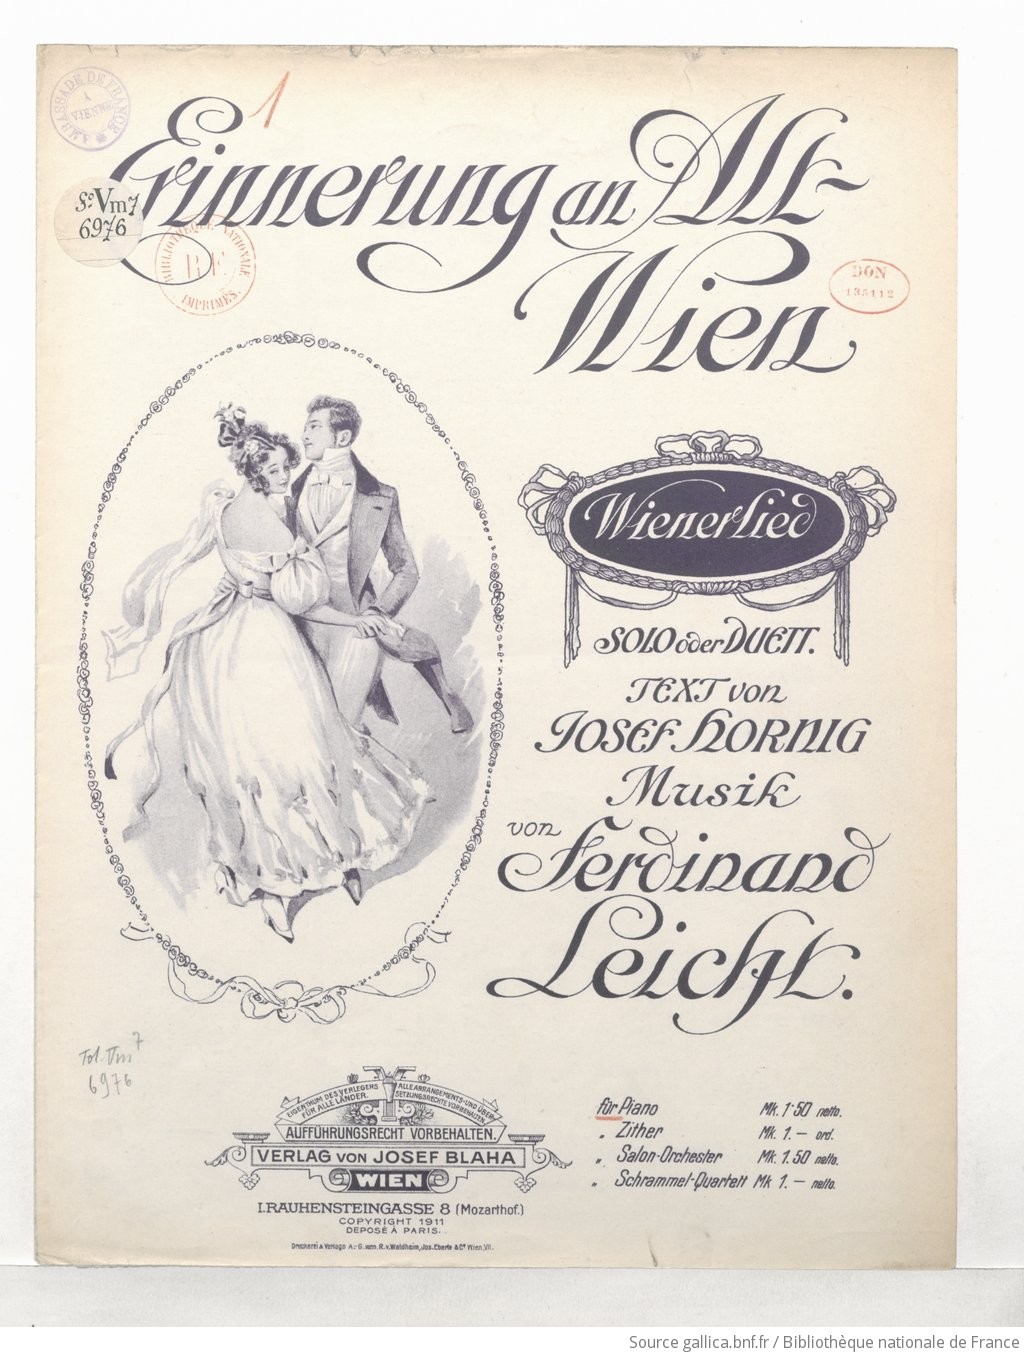 Erinnerung an alt Wien, Wiener Lied, solo oder duett.. Text von Josef  Hornig. Musik von Ferdinand Leicht